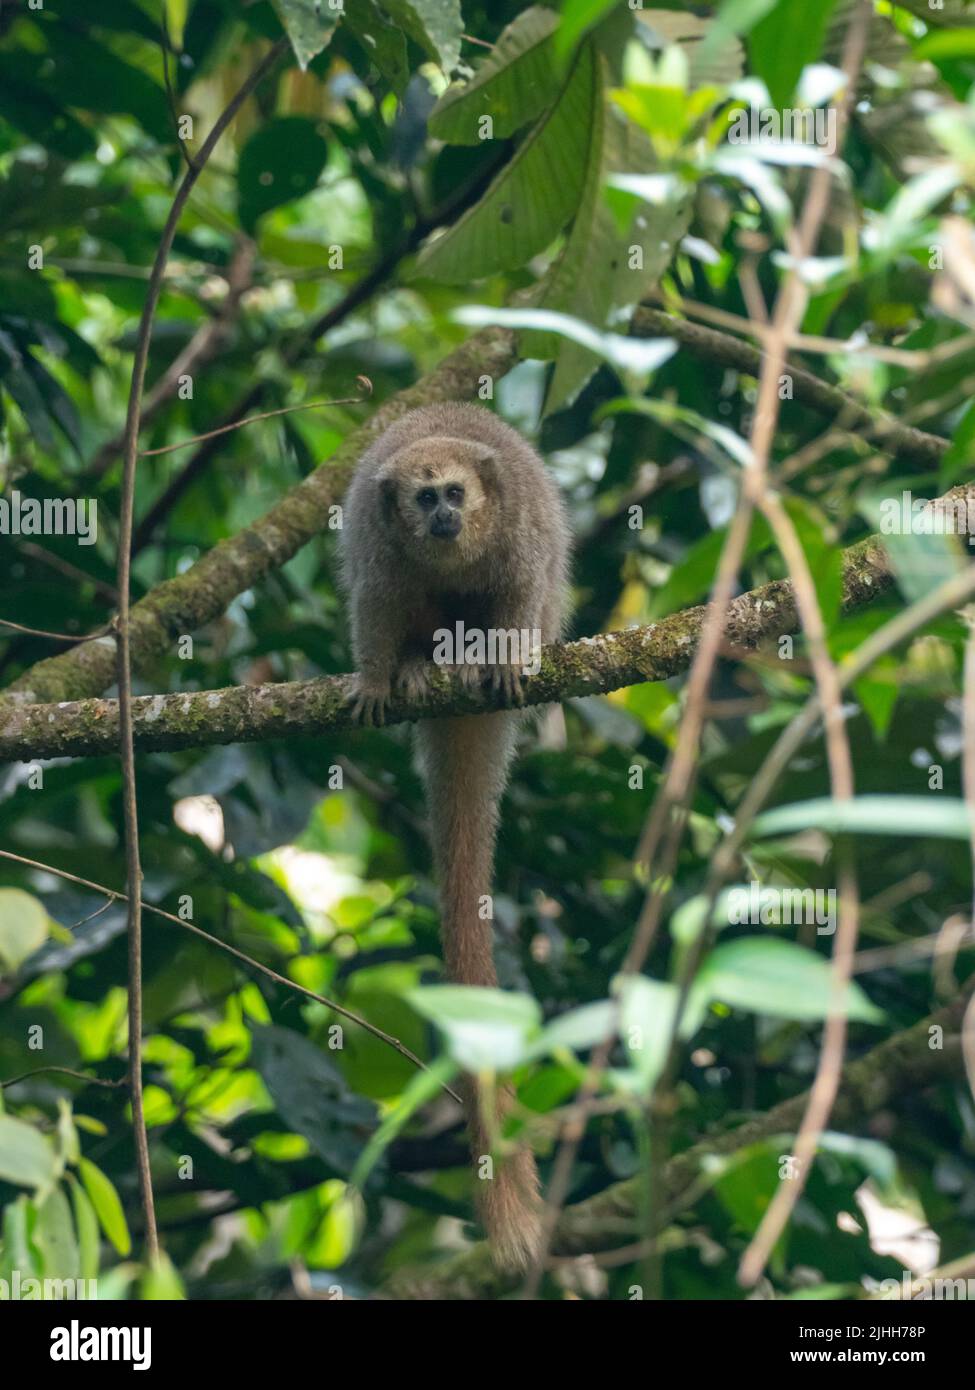 Scimmia Rio Mayo Titi, Plecturocebus enanthe, un primate in pericolo di estinzione, endemico dell'alto fiume mayo del Perù nord-orientale Foto Stock